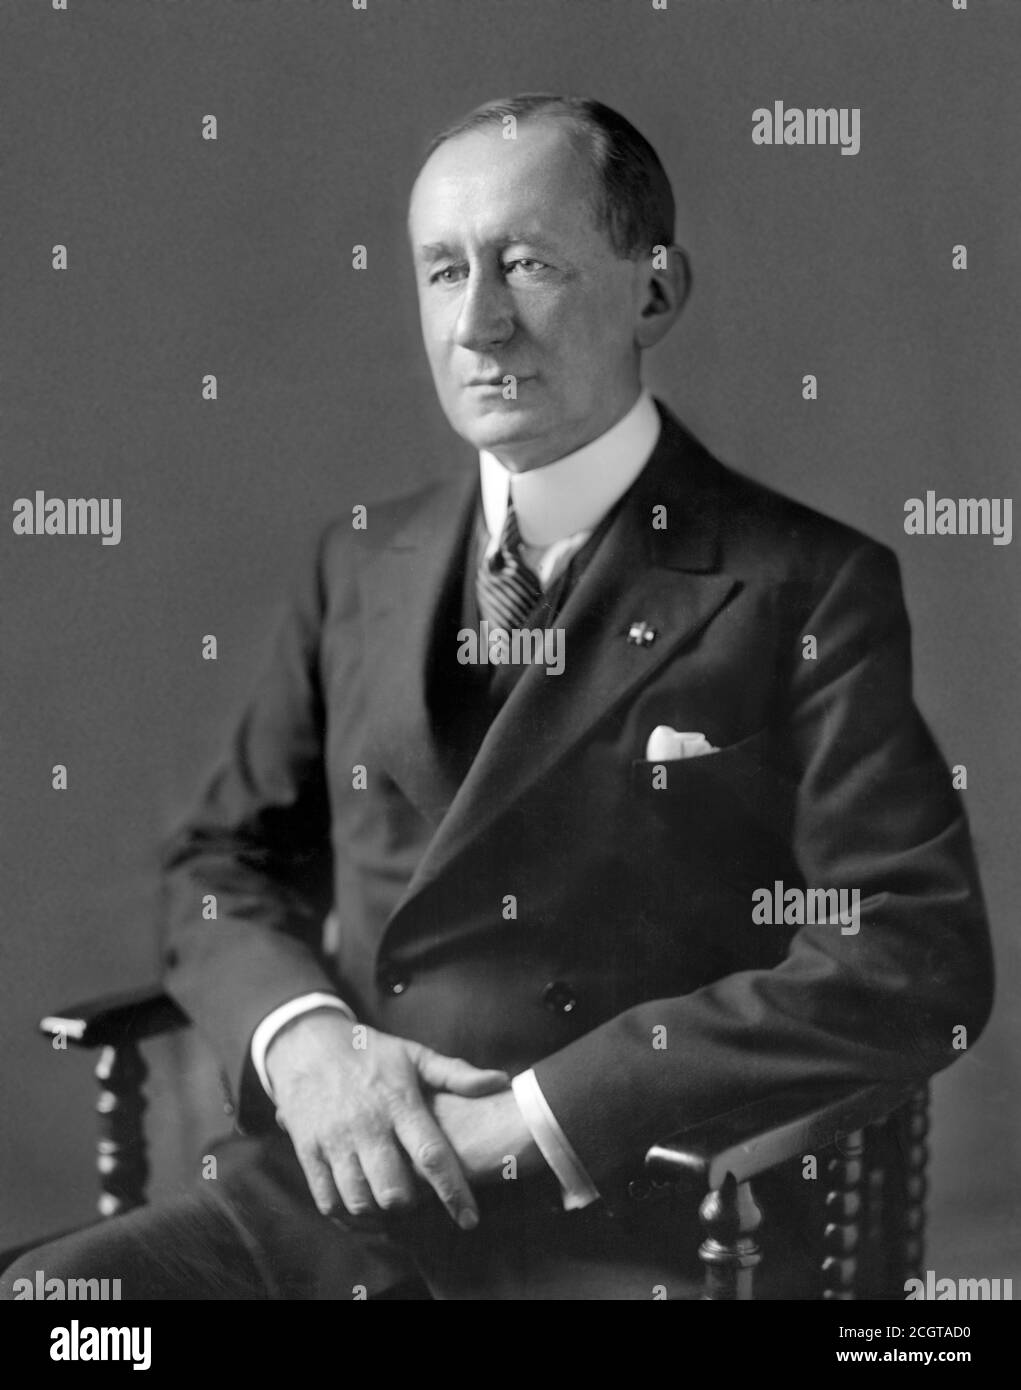 Guglielmo Marconi, retrato mientras que sirve como senador italiano. Foto de stock